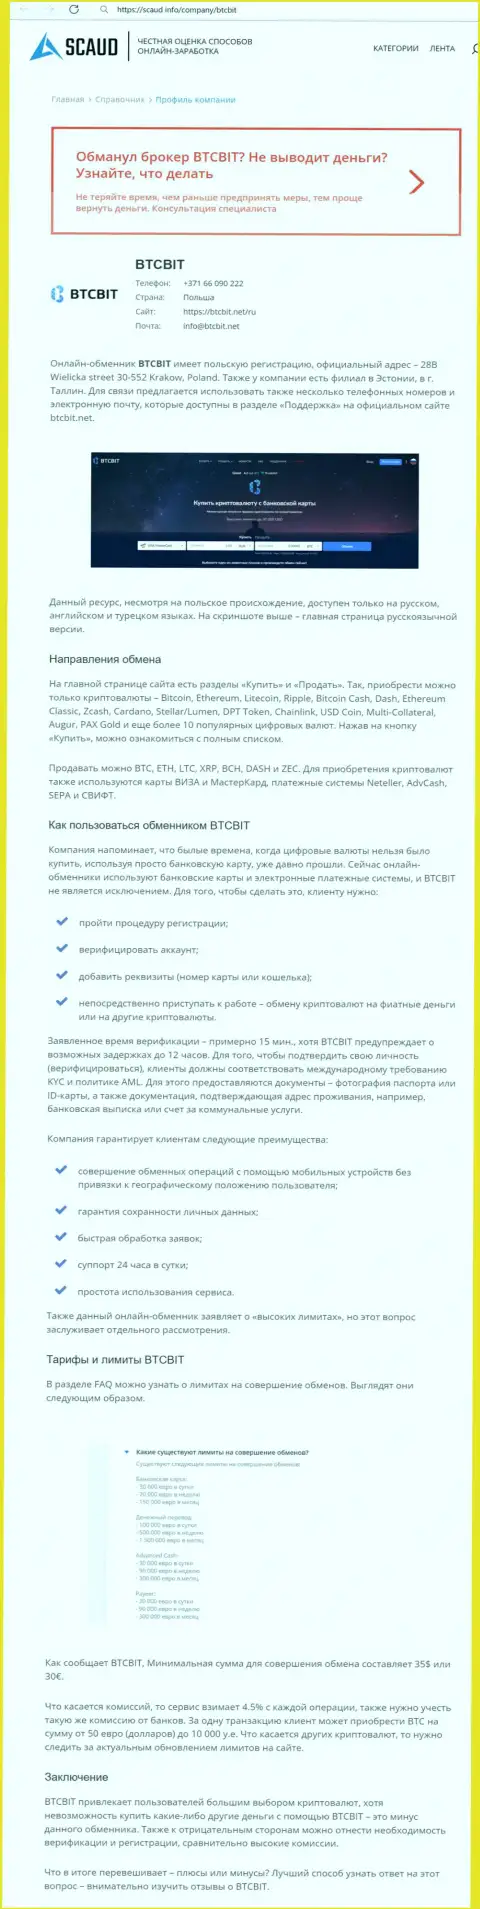 Детальный обзор деятельности обменного online-пункта BTCBit на веб-сайте Scaud Info